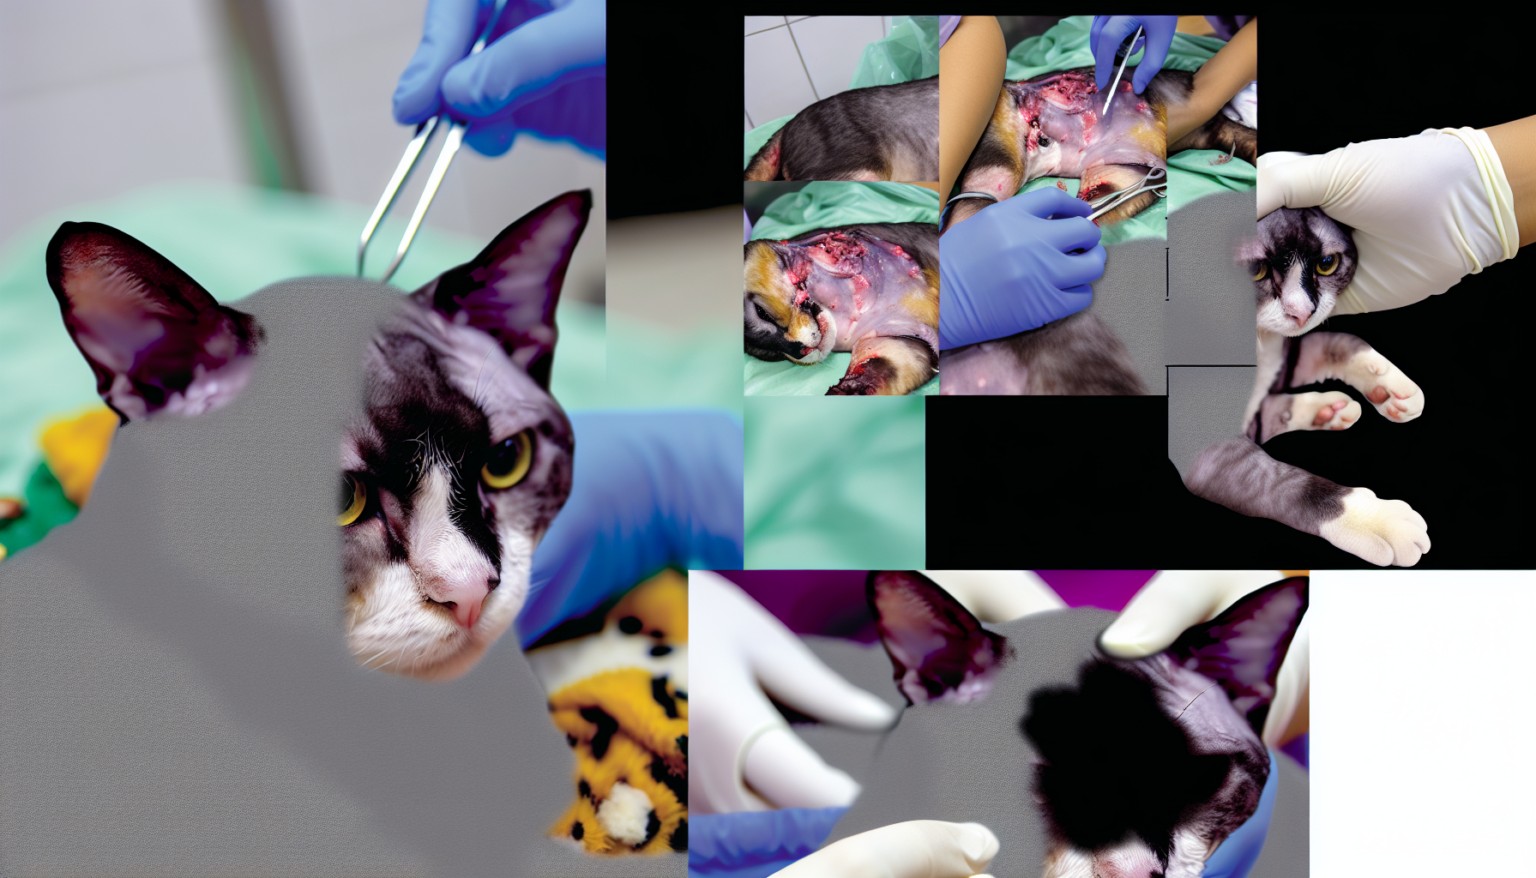 Pawtounes | Temps de récupération après stérilisation d'un chat: Guide complet - stérilisation des chats, santé des chats, bien-être des chats, castration des chats, ovariectomie des chats, ovario-hystérectomie des chats, hormones sexuelles des chats, surpopulation féline, comportement des chats, cancers félins, infection utérine des chats, temps de récupération de la stérilisation, effets de l'anesthésie, suivi de la santé du chat, complication post opératoire, soins postopératoires des chats, confort du chat, consultation vétérinaire, environnement félin, population féline mondiale.